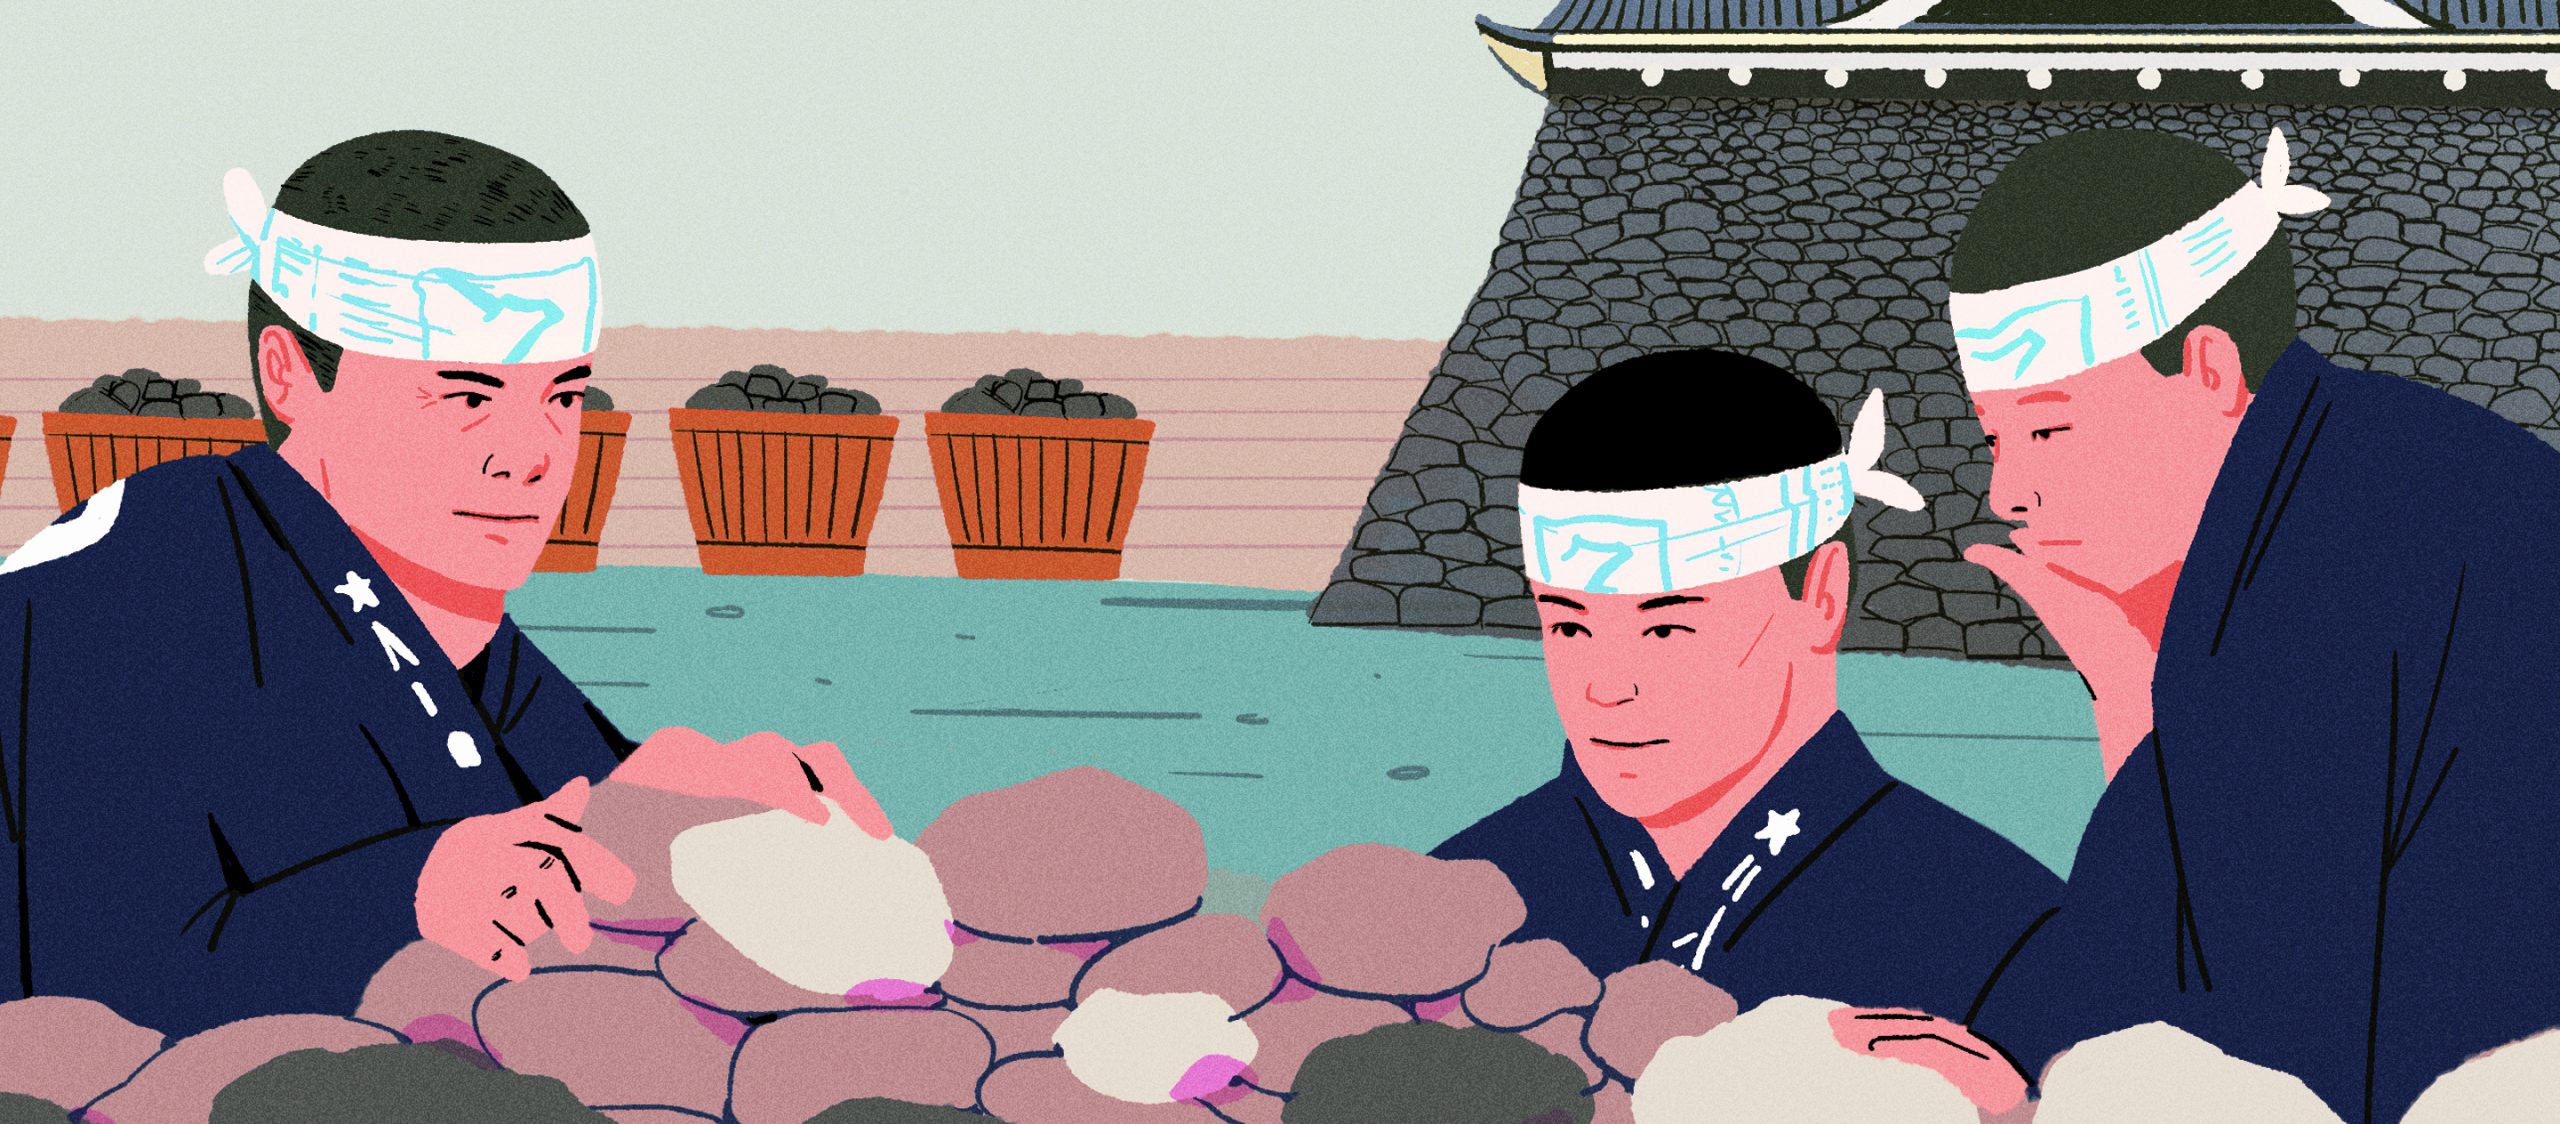 งานหิน Ishi-tsumi ศาสตร์การเรียงหินสุดคราฟต์ของญี่ปุ่นที่ต้องรู้หน้าและรู้ใจหิน